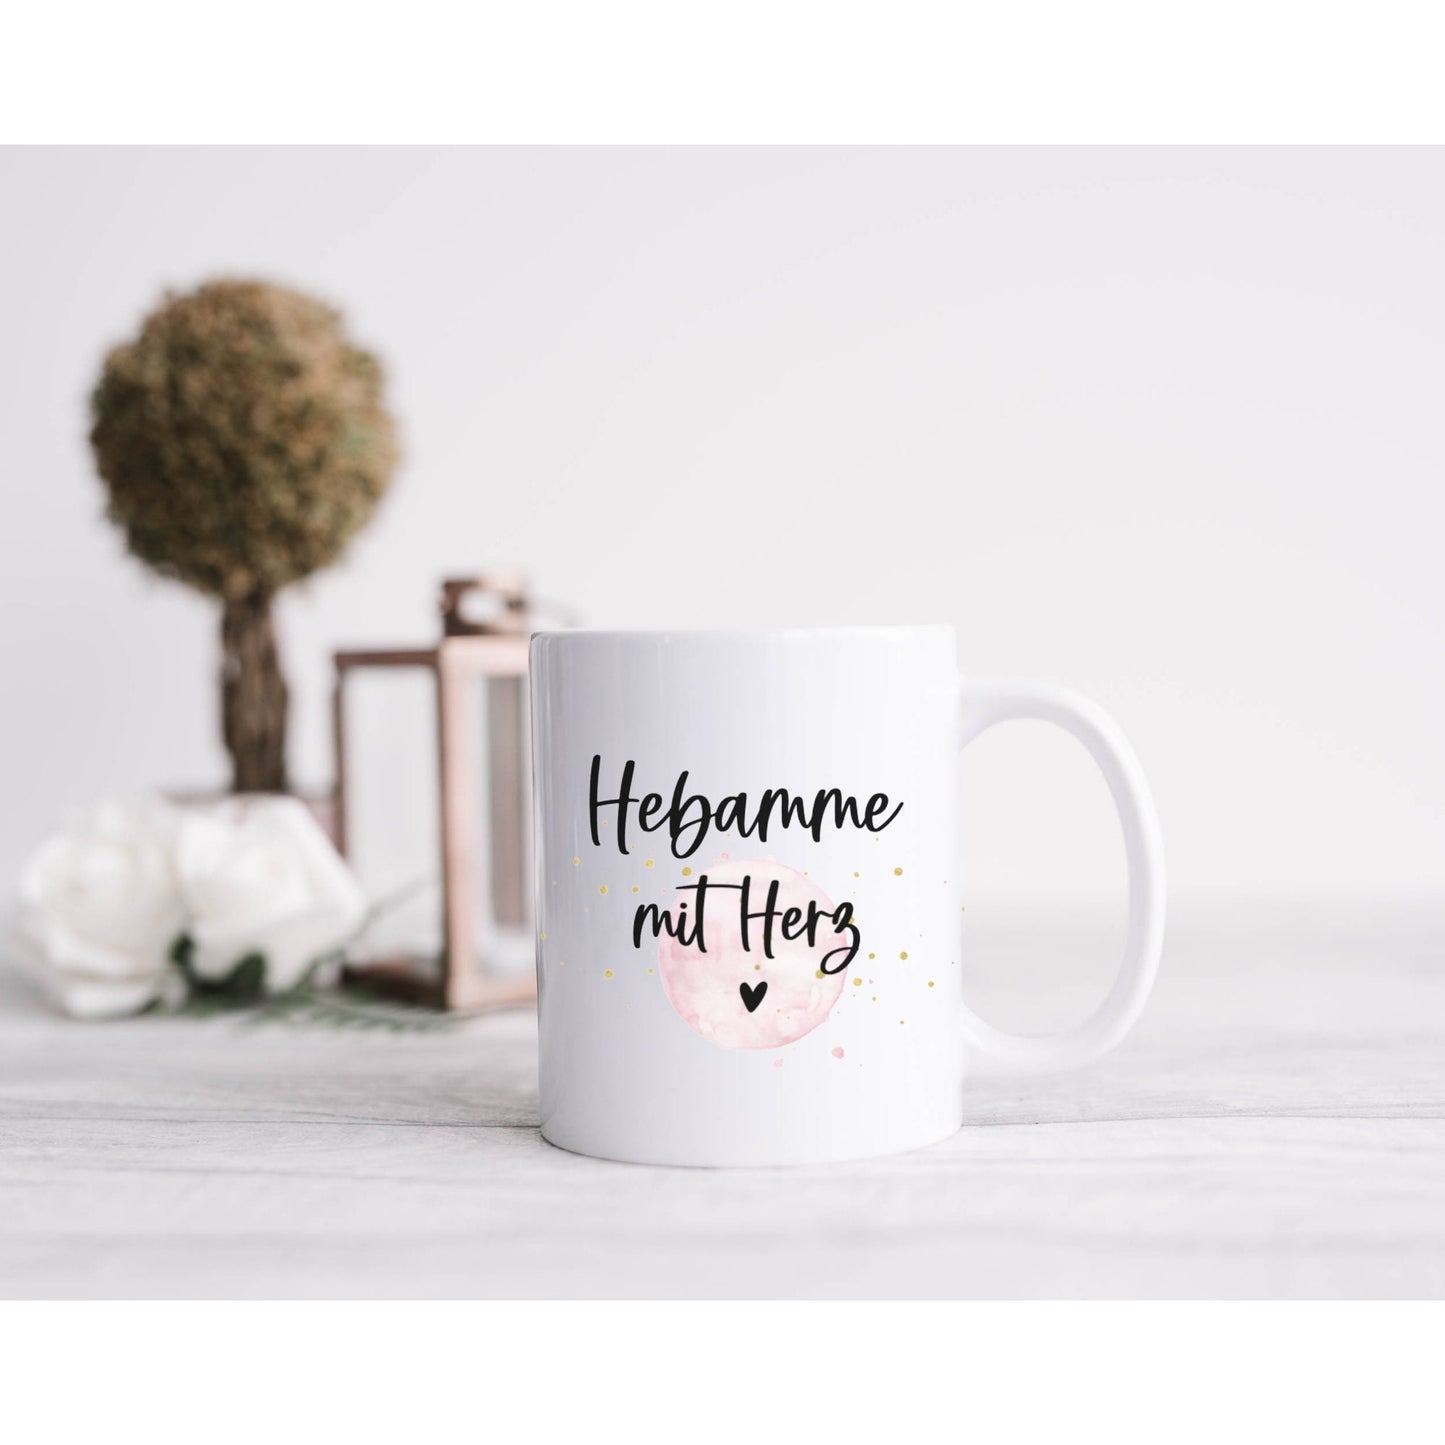 Tasse Hebamme mit Herz rosa - personalisiert - Geschenk Dankeschön für die Hebamme - Kaffeetasse mit Namen